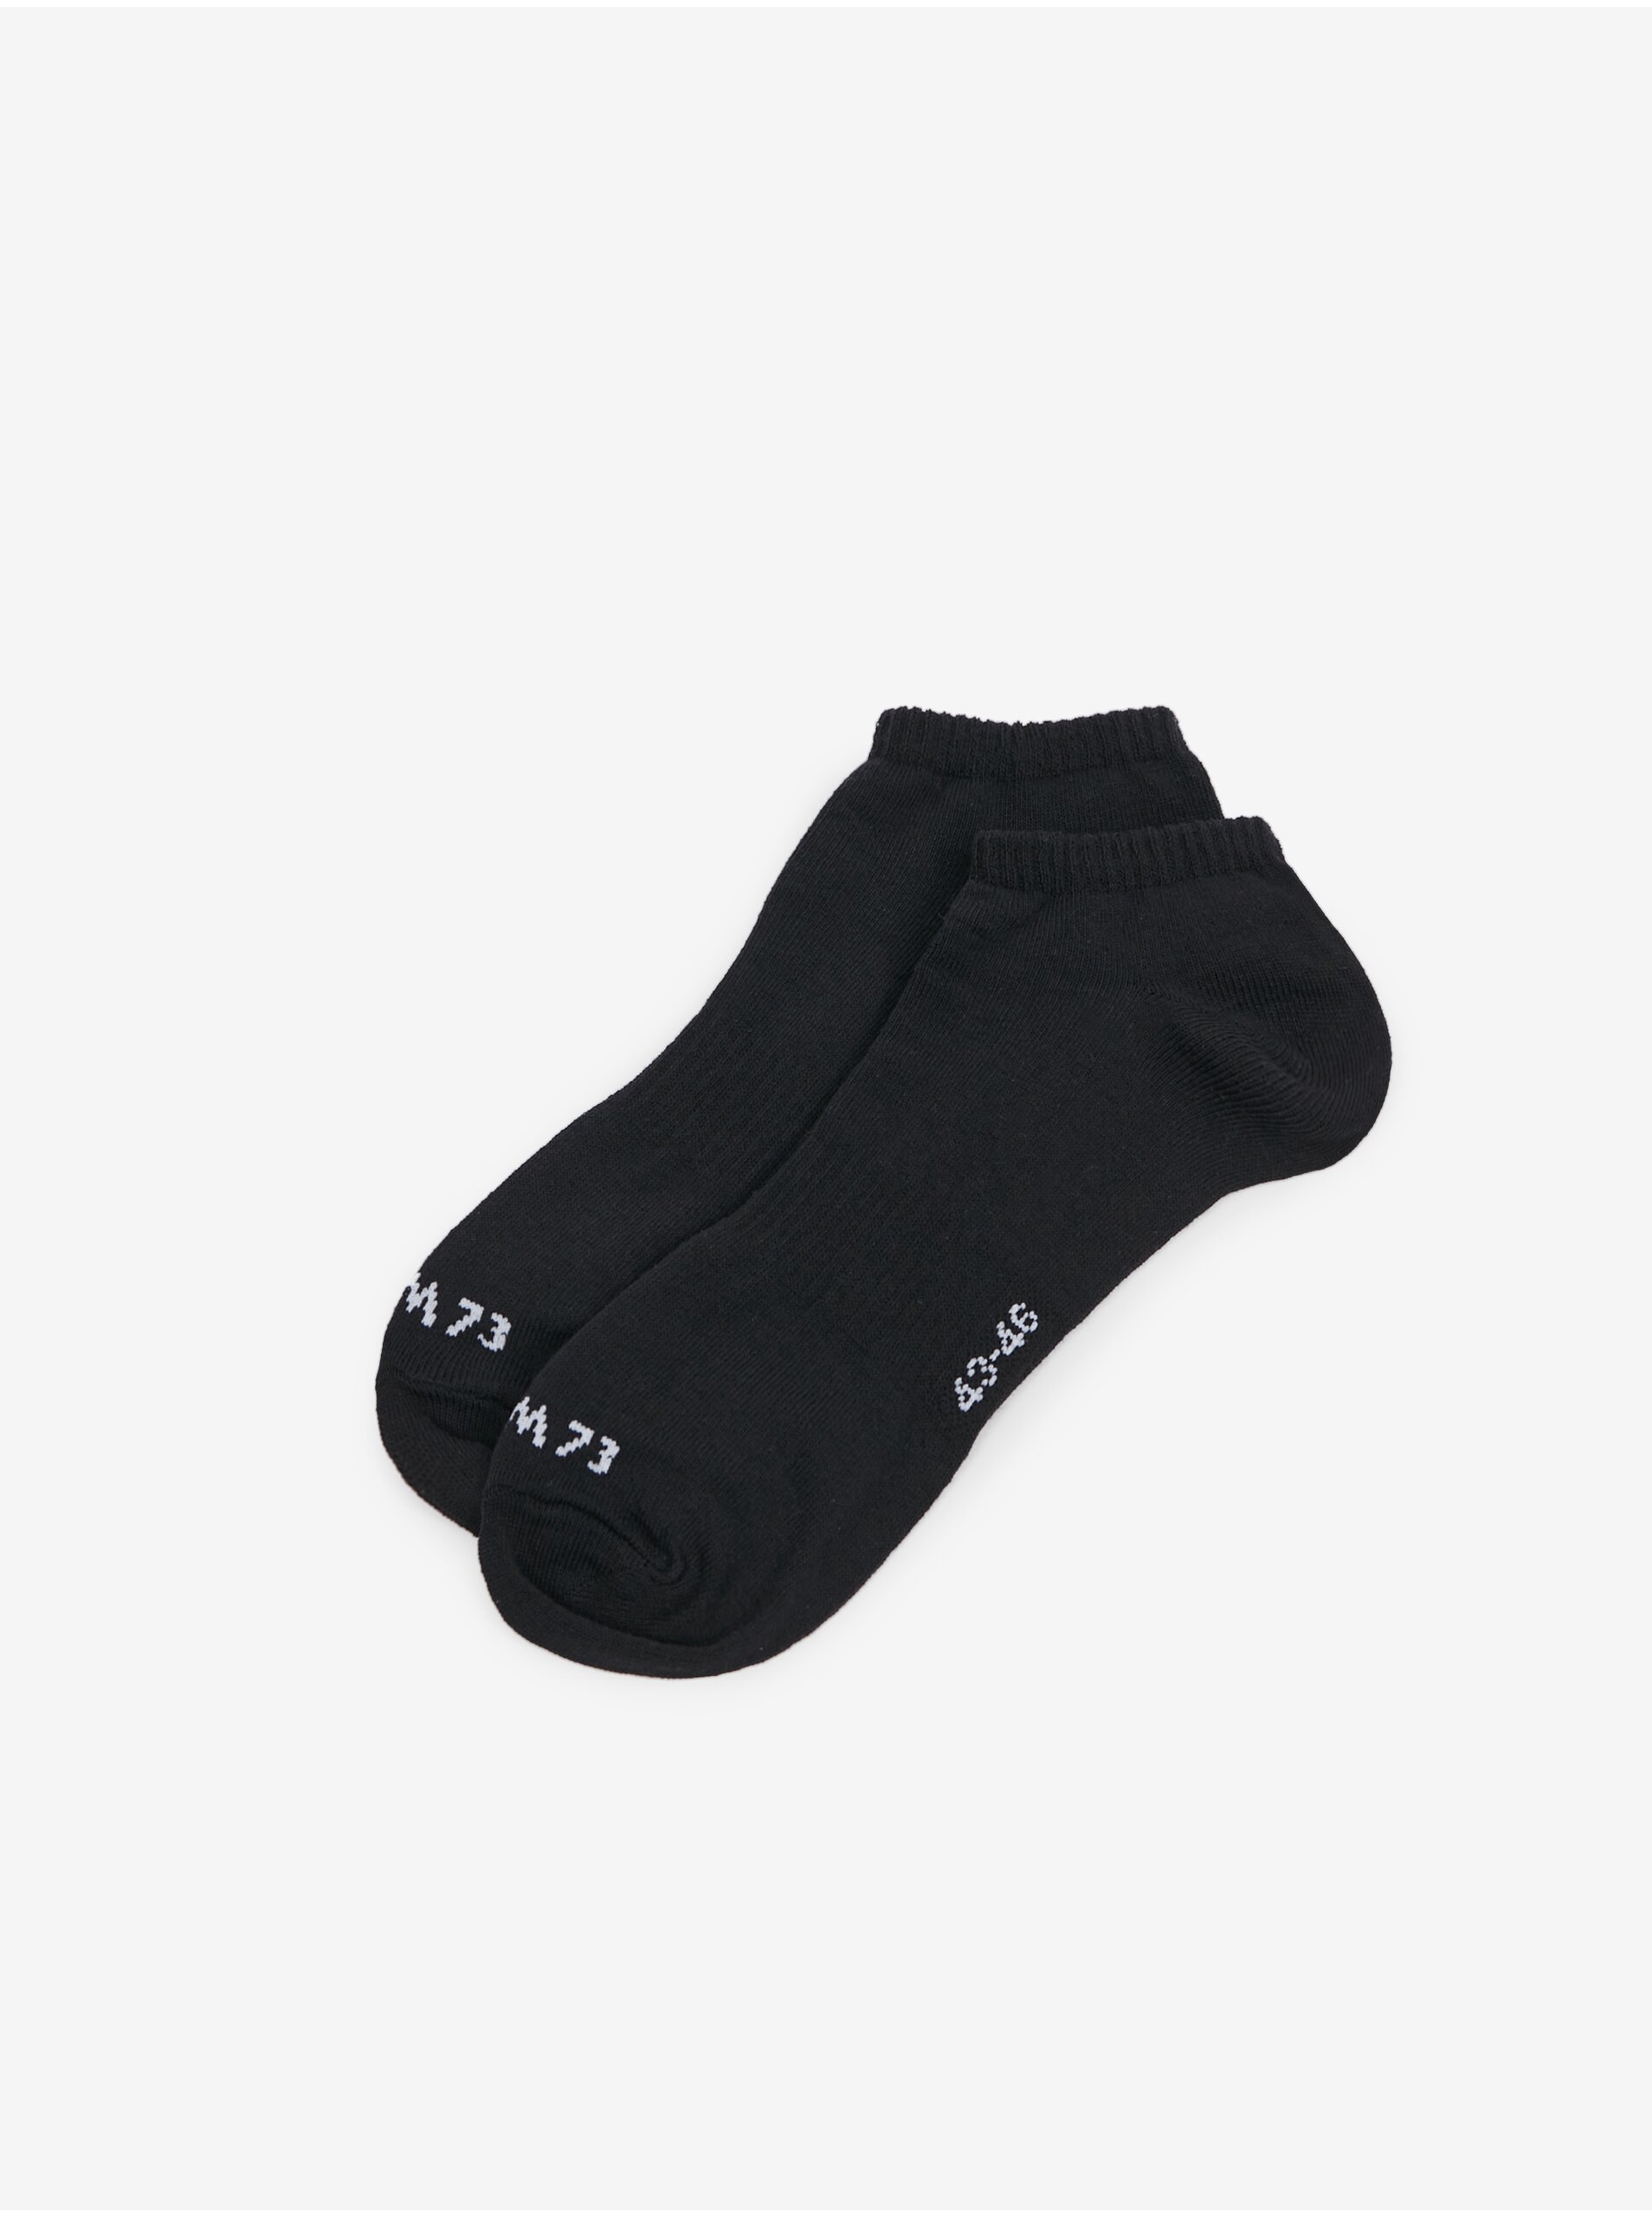 Lacno Súprava dvoch párov ponožiek v čiernej farbe SAM 73 Kingston